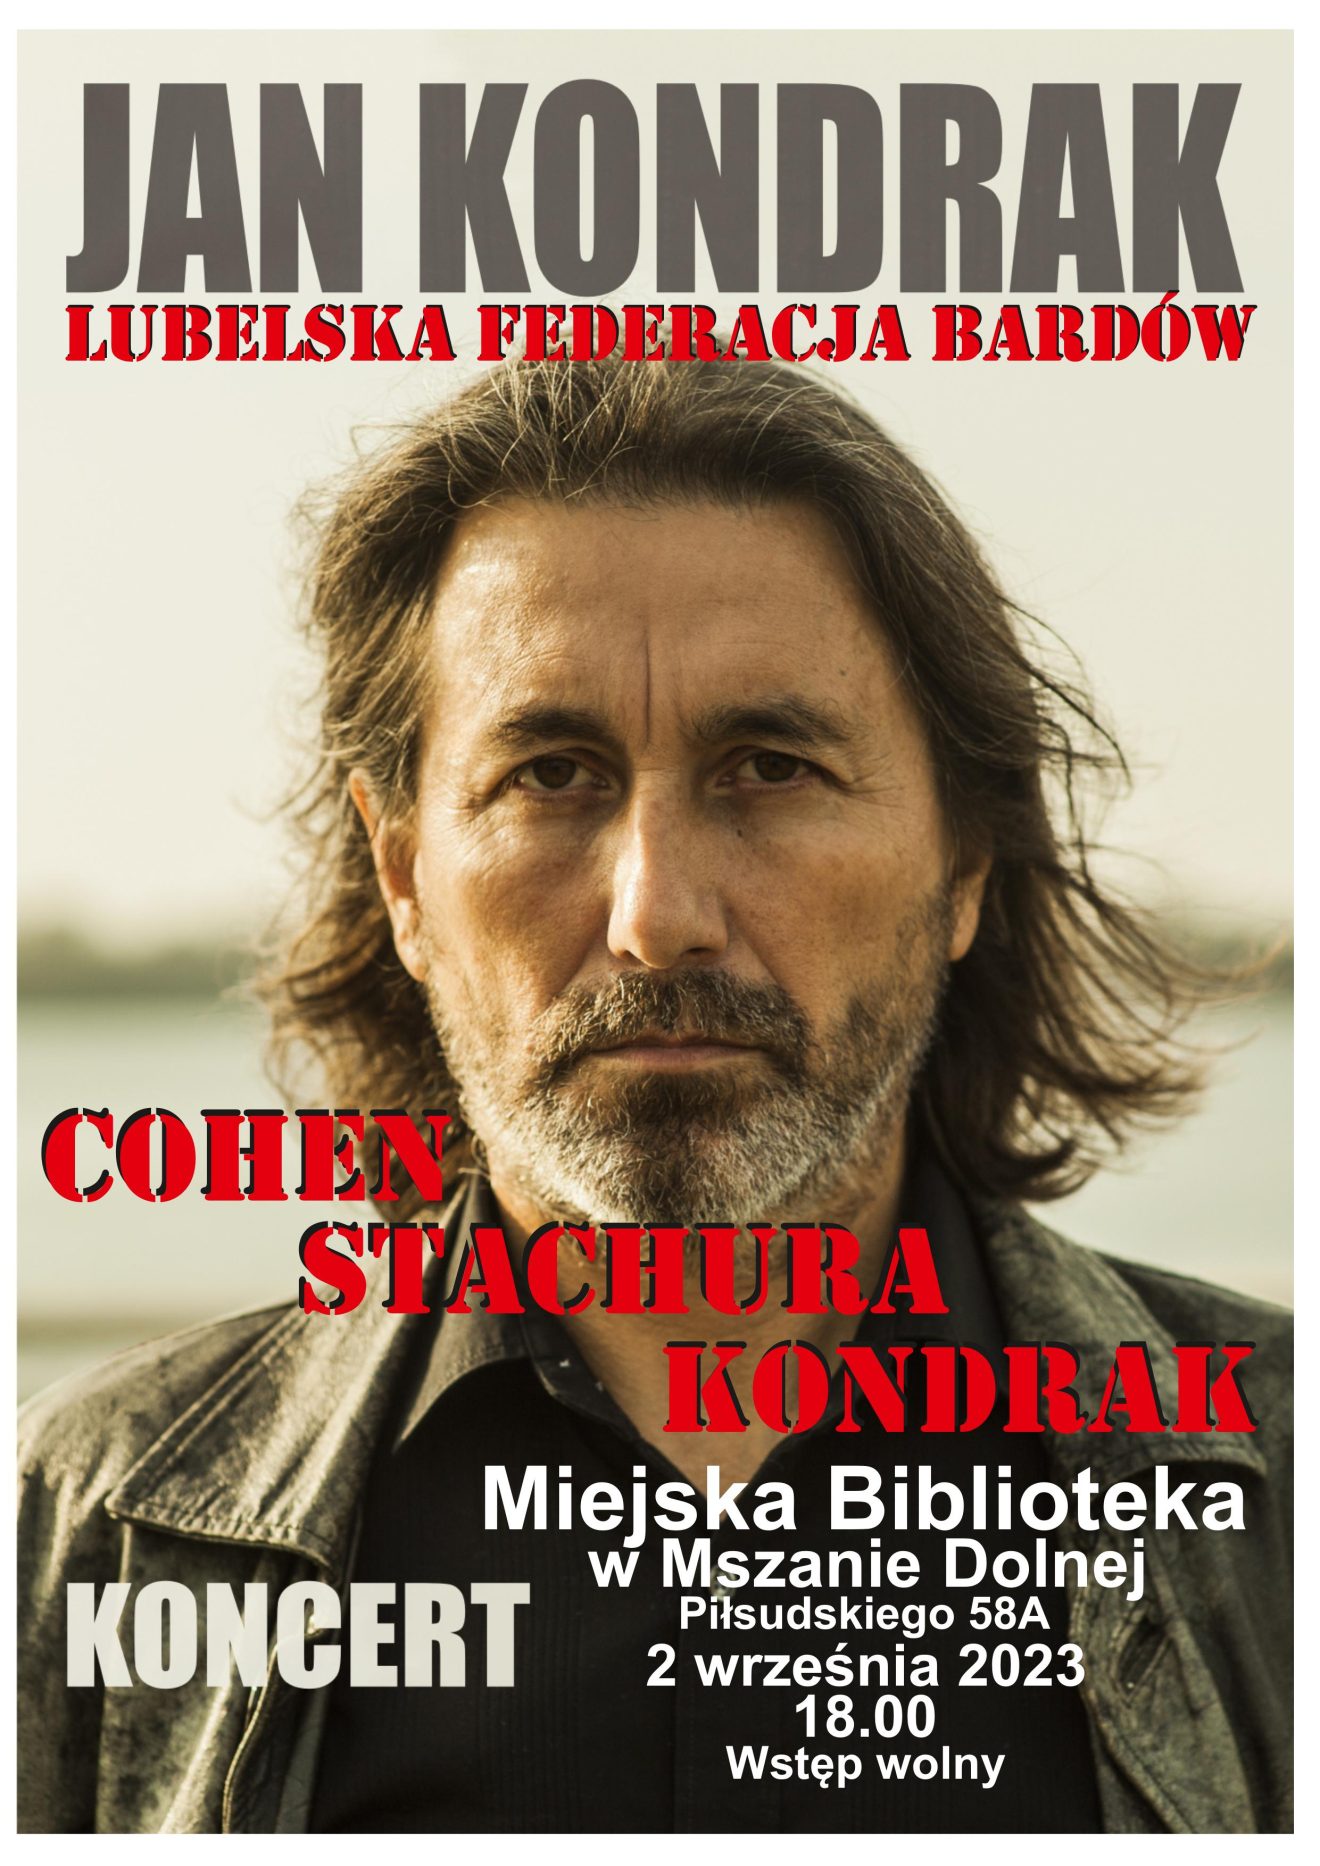 Plakat przedstawiający Jana Kondraka, promujący koncert który odbędzie się 2 września. 